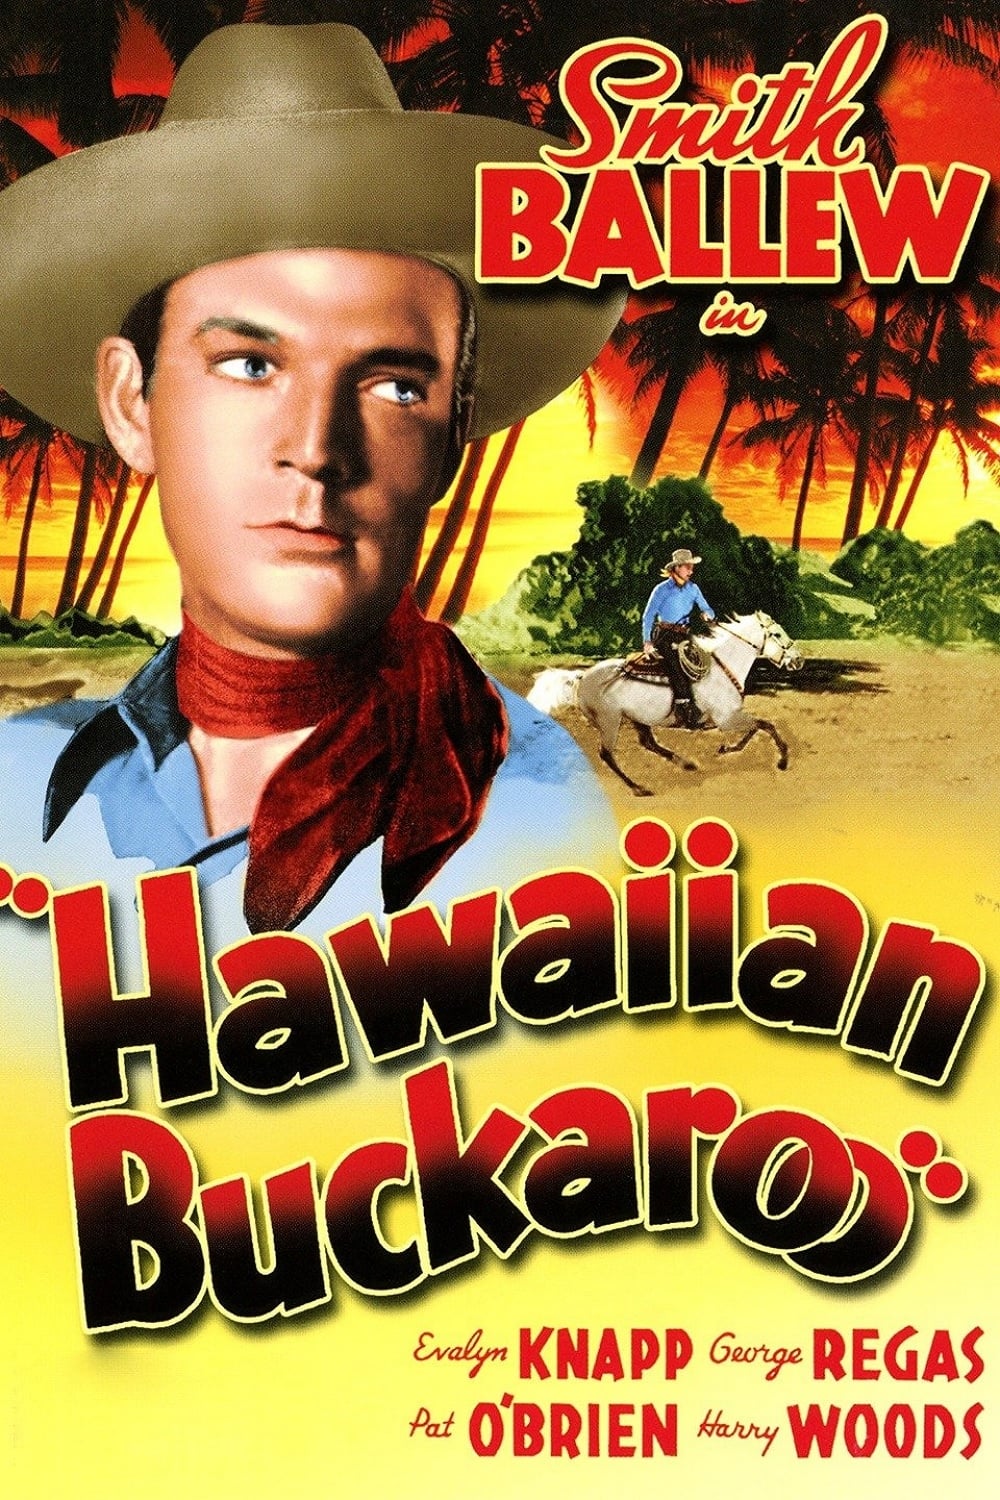 Hawaiian Buckaroo